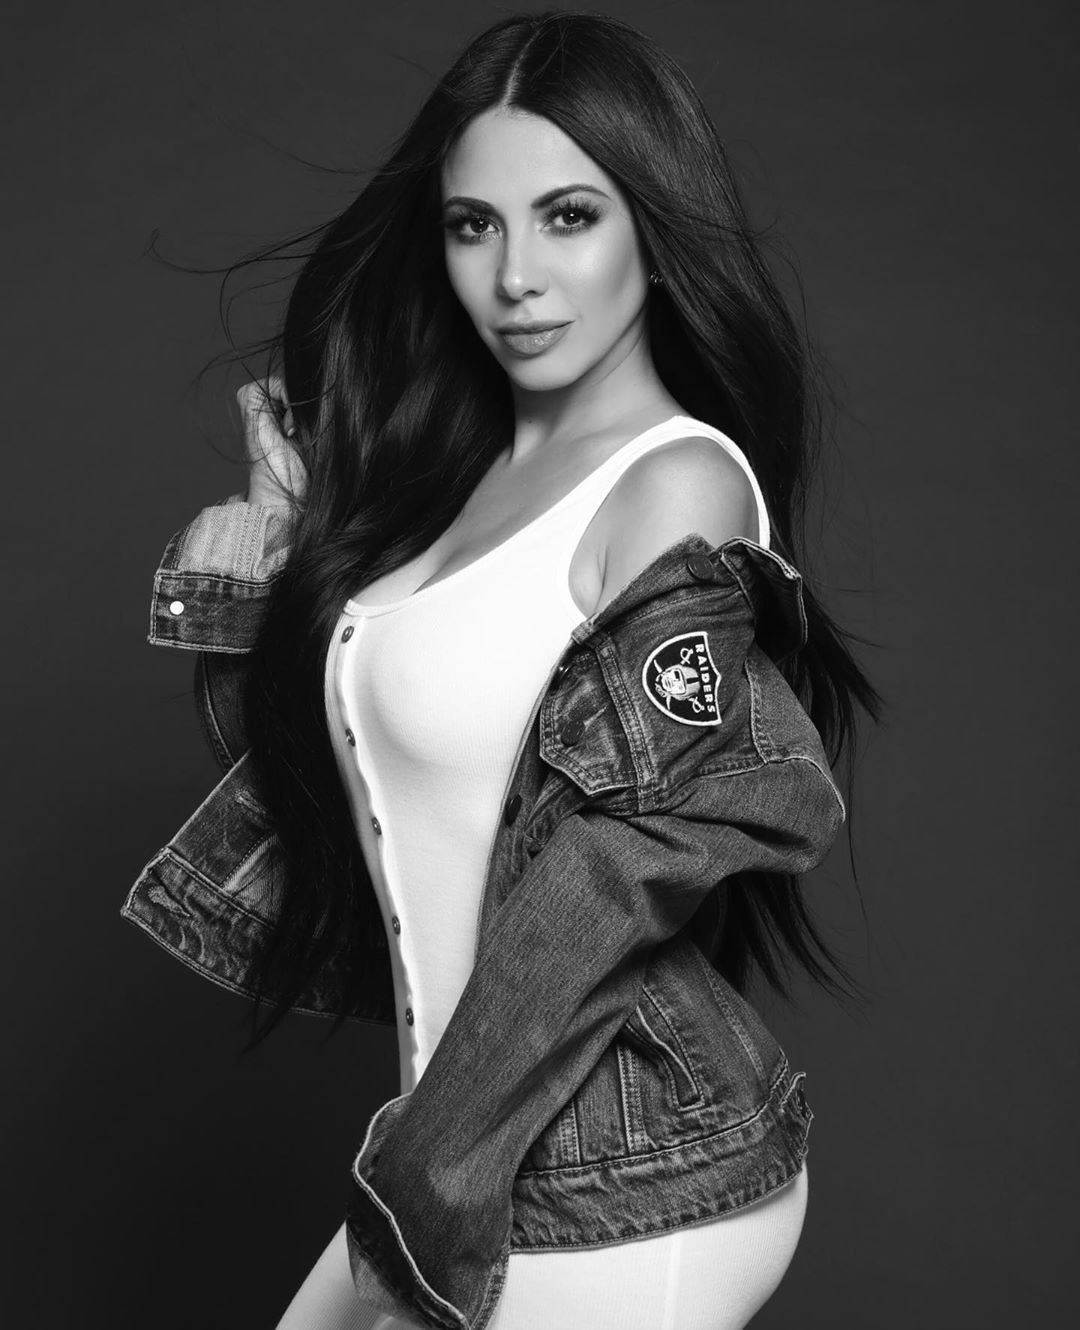 Basta con echar un vistazo a la modelo de moda, Jimena Sanchez: Modelos calientes de Instagram  